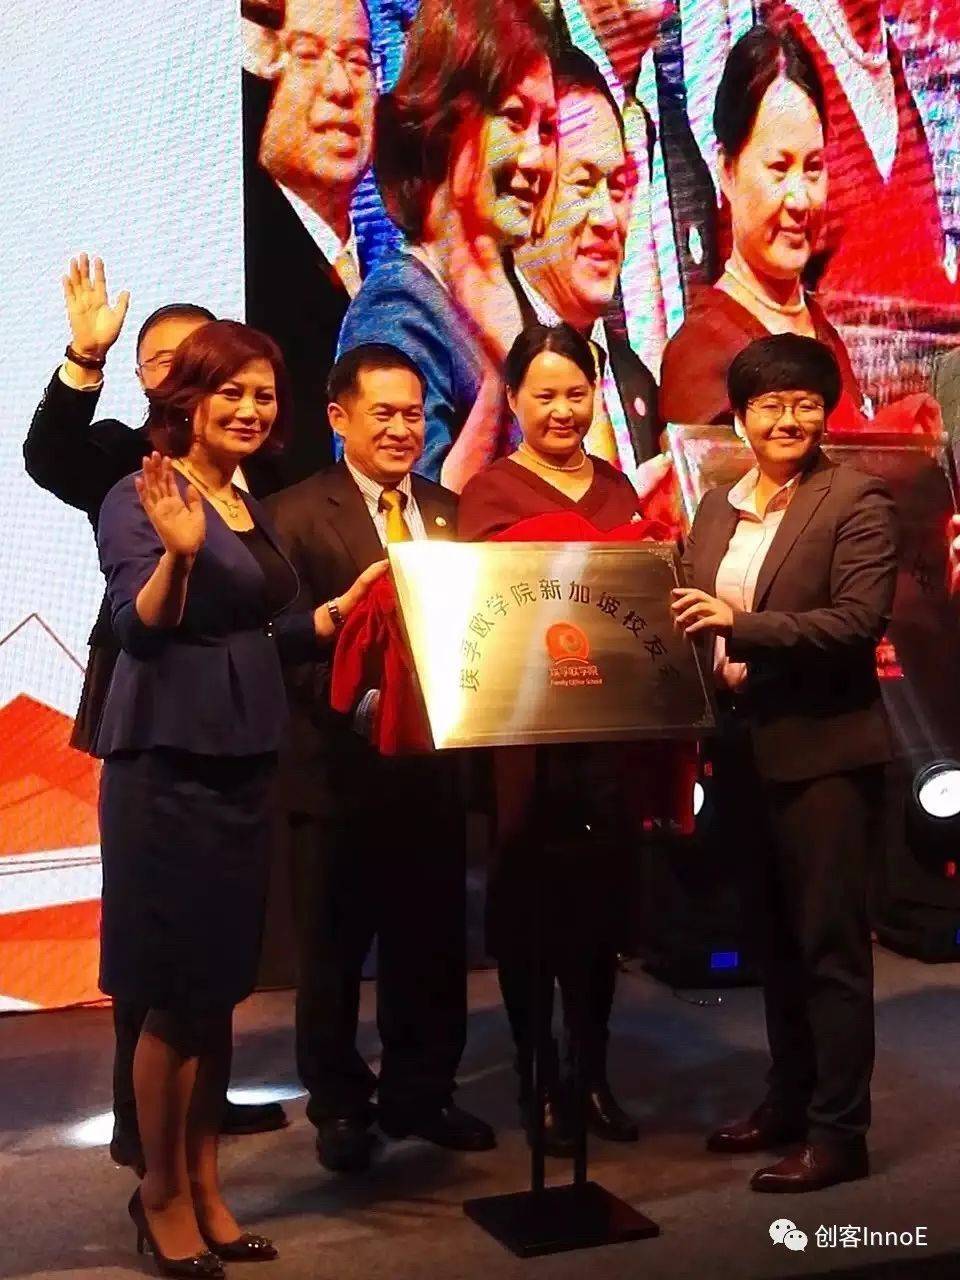 新移民的骄傲——热烈祝贺AIA第46届顶级获奖者李玲荣获新加坡年度最佳理财顾问和高端财富管理第一名